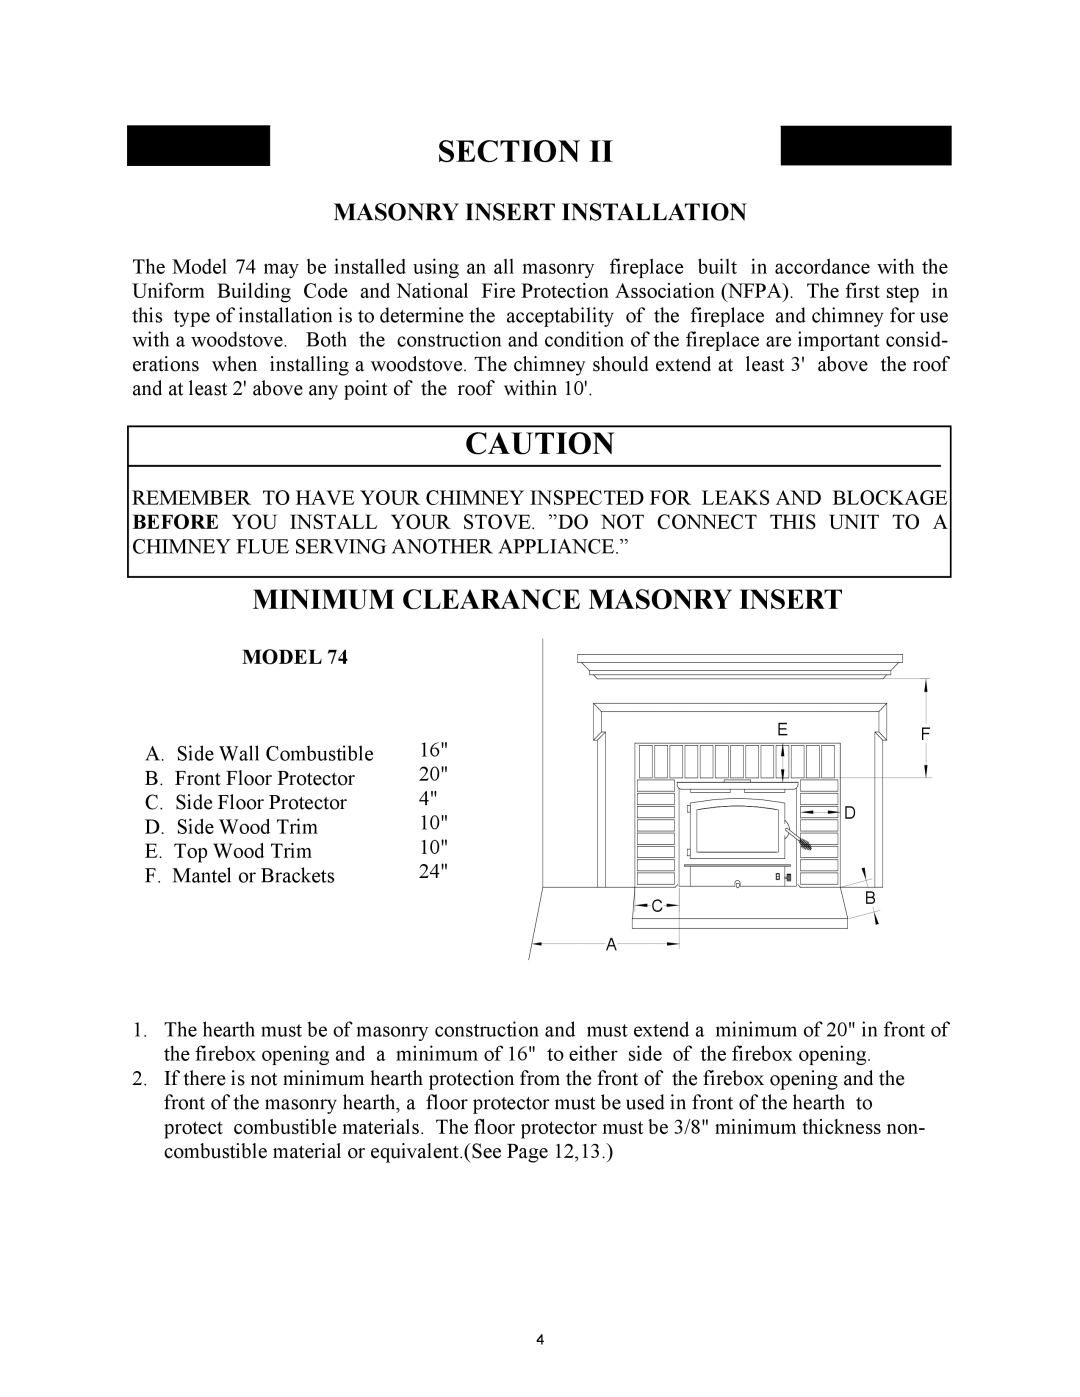 New Buck Corporation 74 Minimum Clearance Masonry Insert, Masonry Insert Installation, Model, Section 